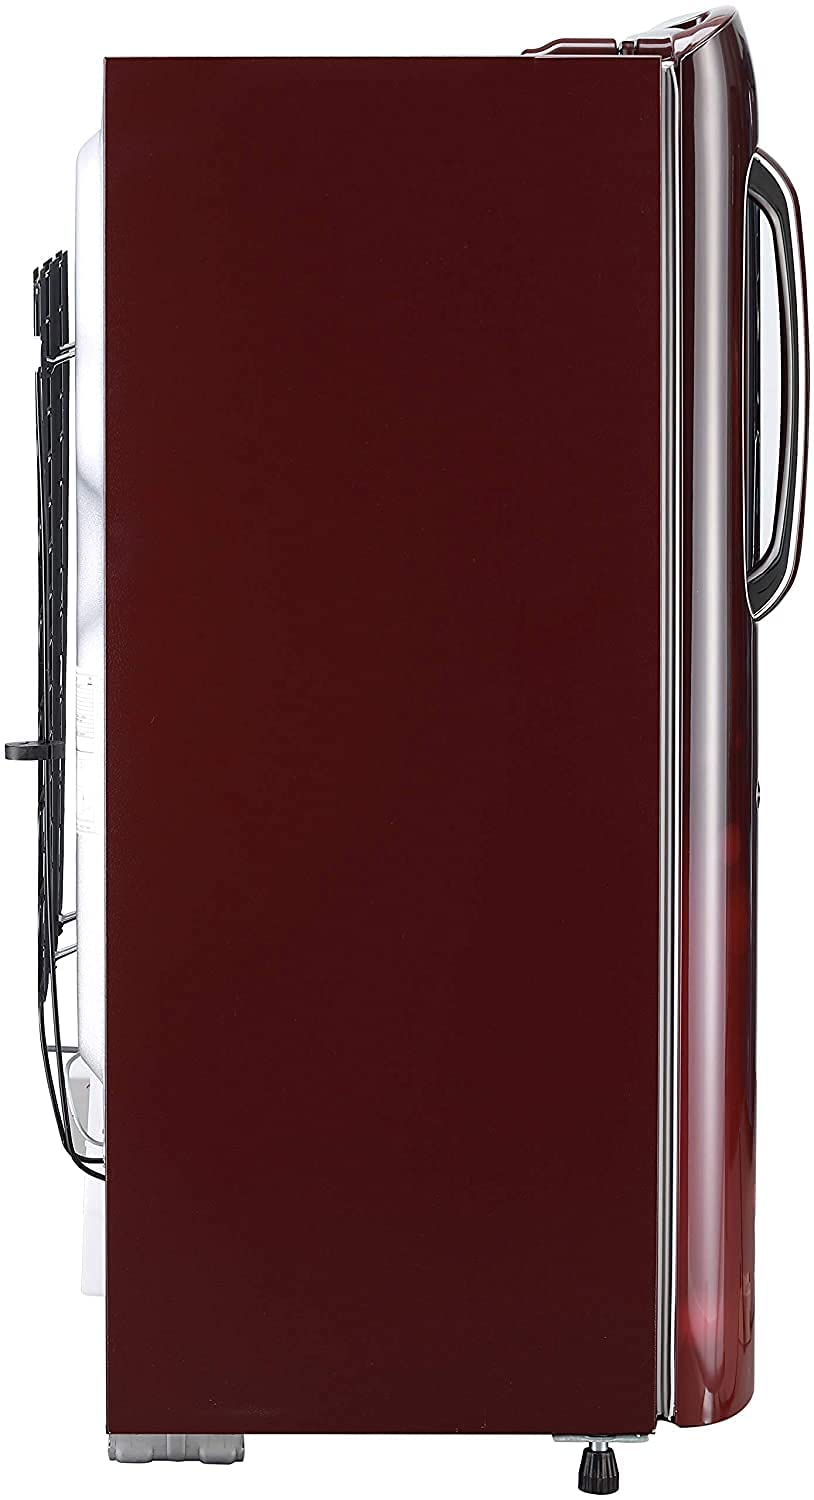 LG 205 L 4 Star Inverter Direct-Cool Single Door Refrigerator  Scarlet Charm, Moist 'N' Fresh, Gross Volume GL-B221ASCY